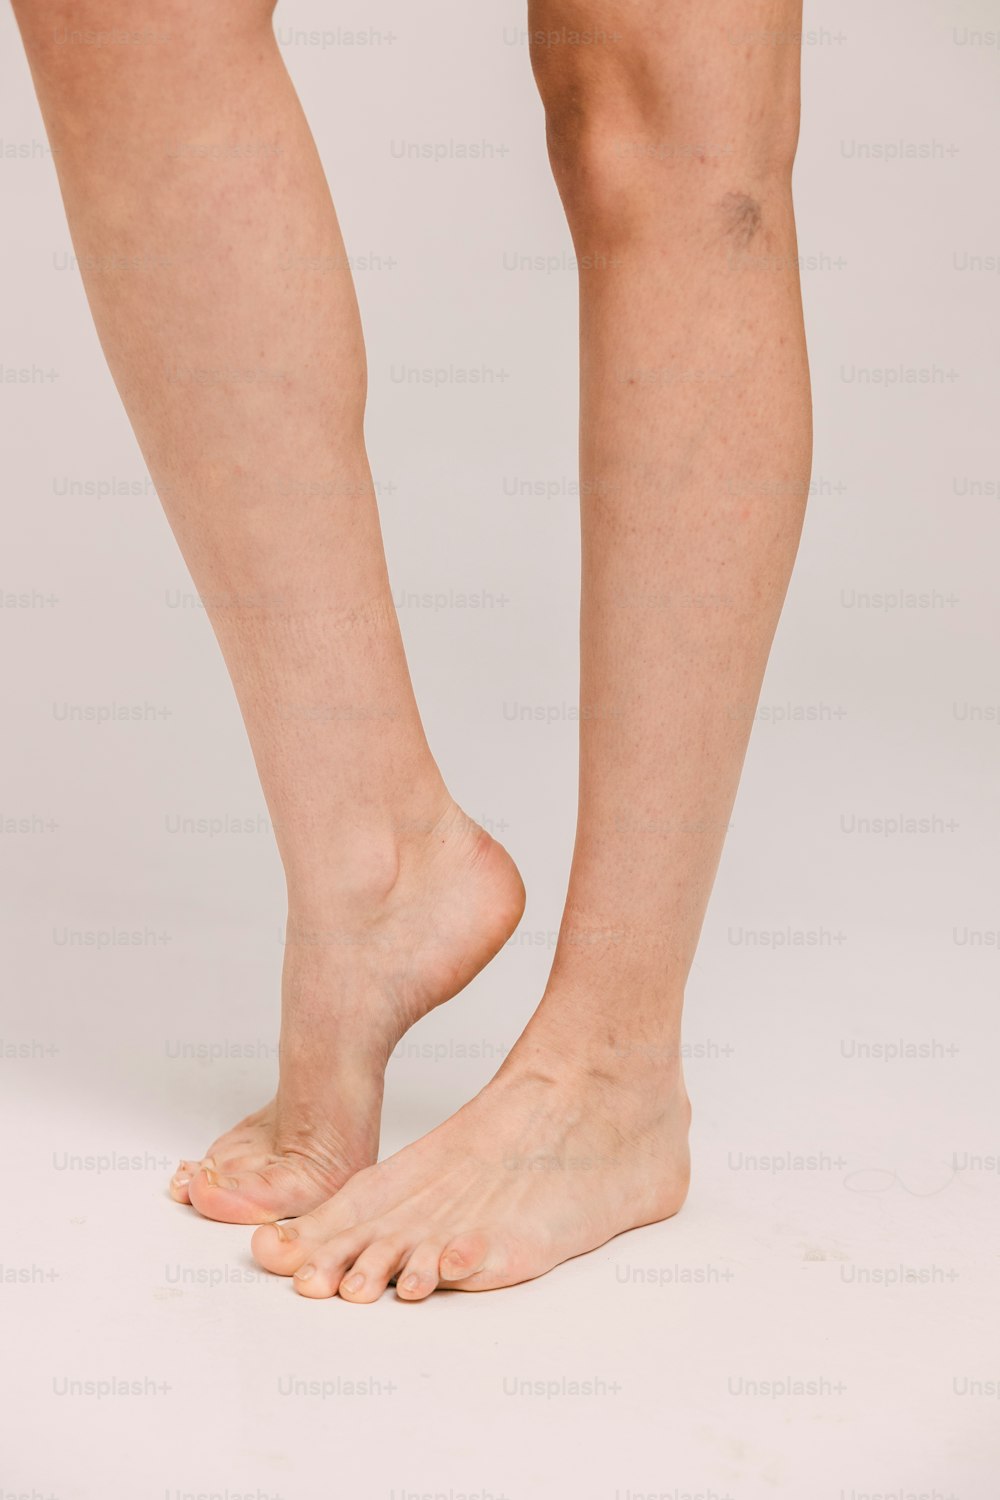 una persona in piedi su una superficie bianca con i piedi nudi